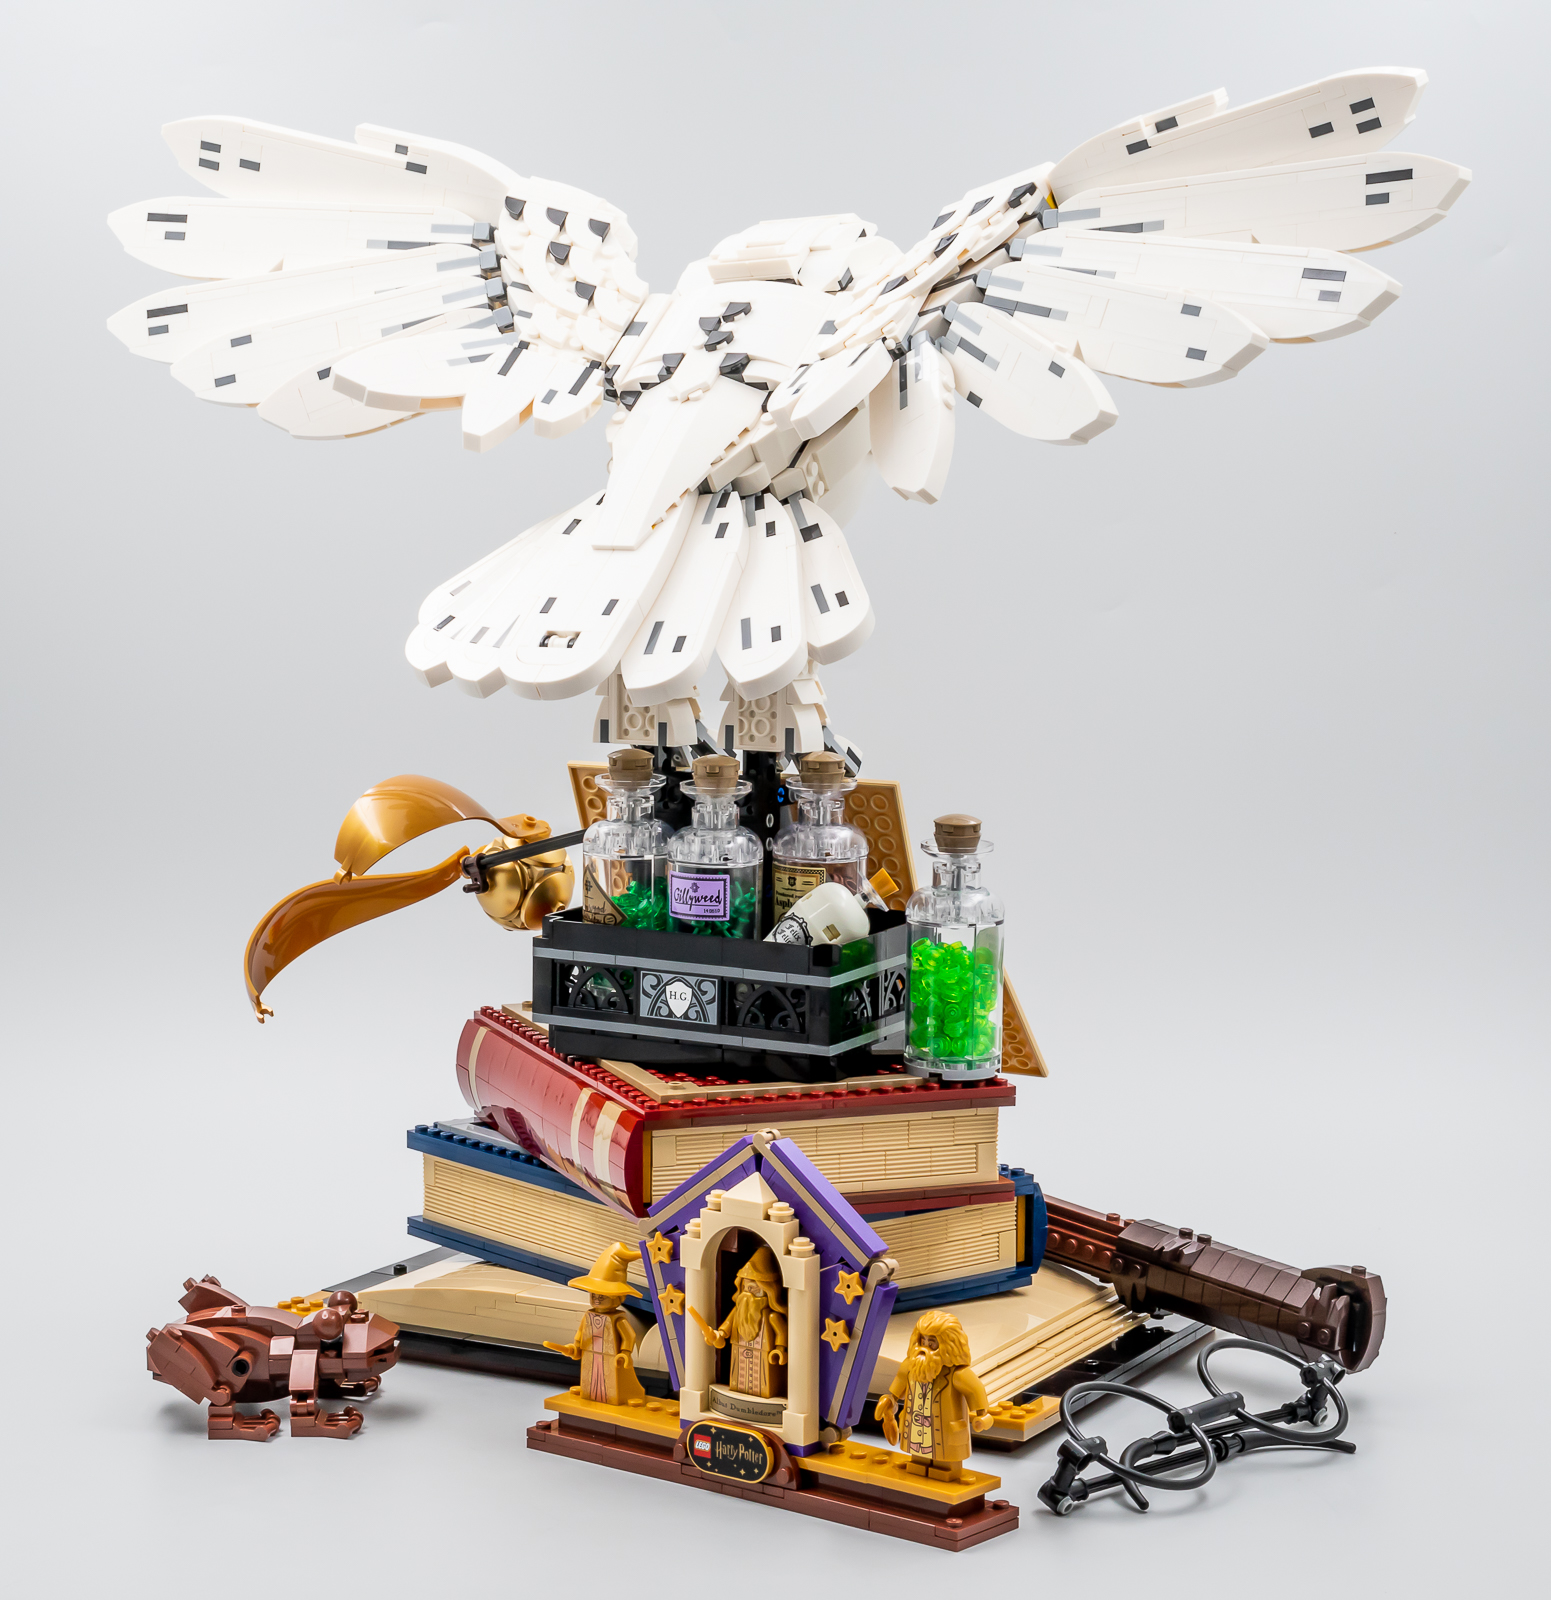 76391 - LEGO® Harry Potter - Icônes de Poudlard - Édition Collector LEGO :  King Jouet, Lego, briques et blocs LEGO - Jeux de construction